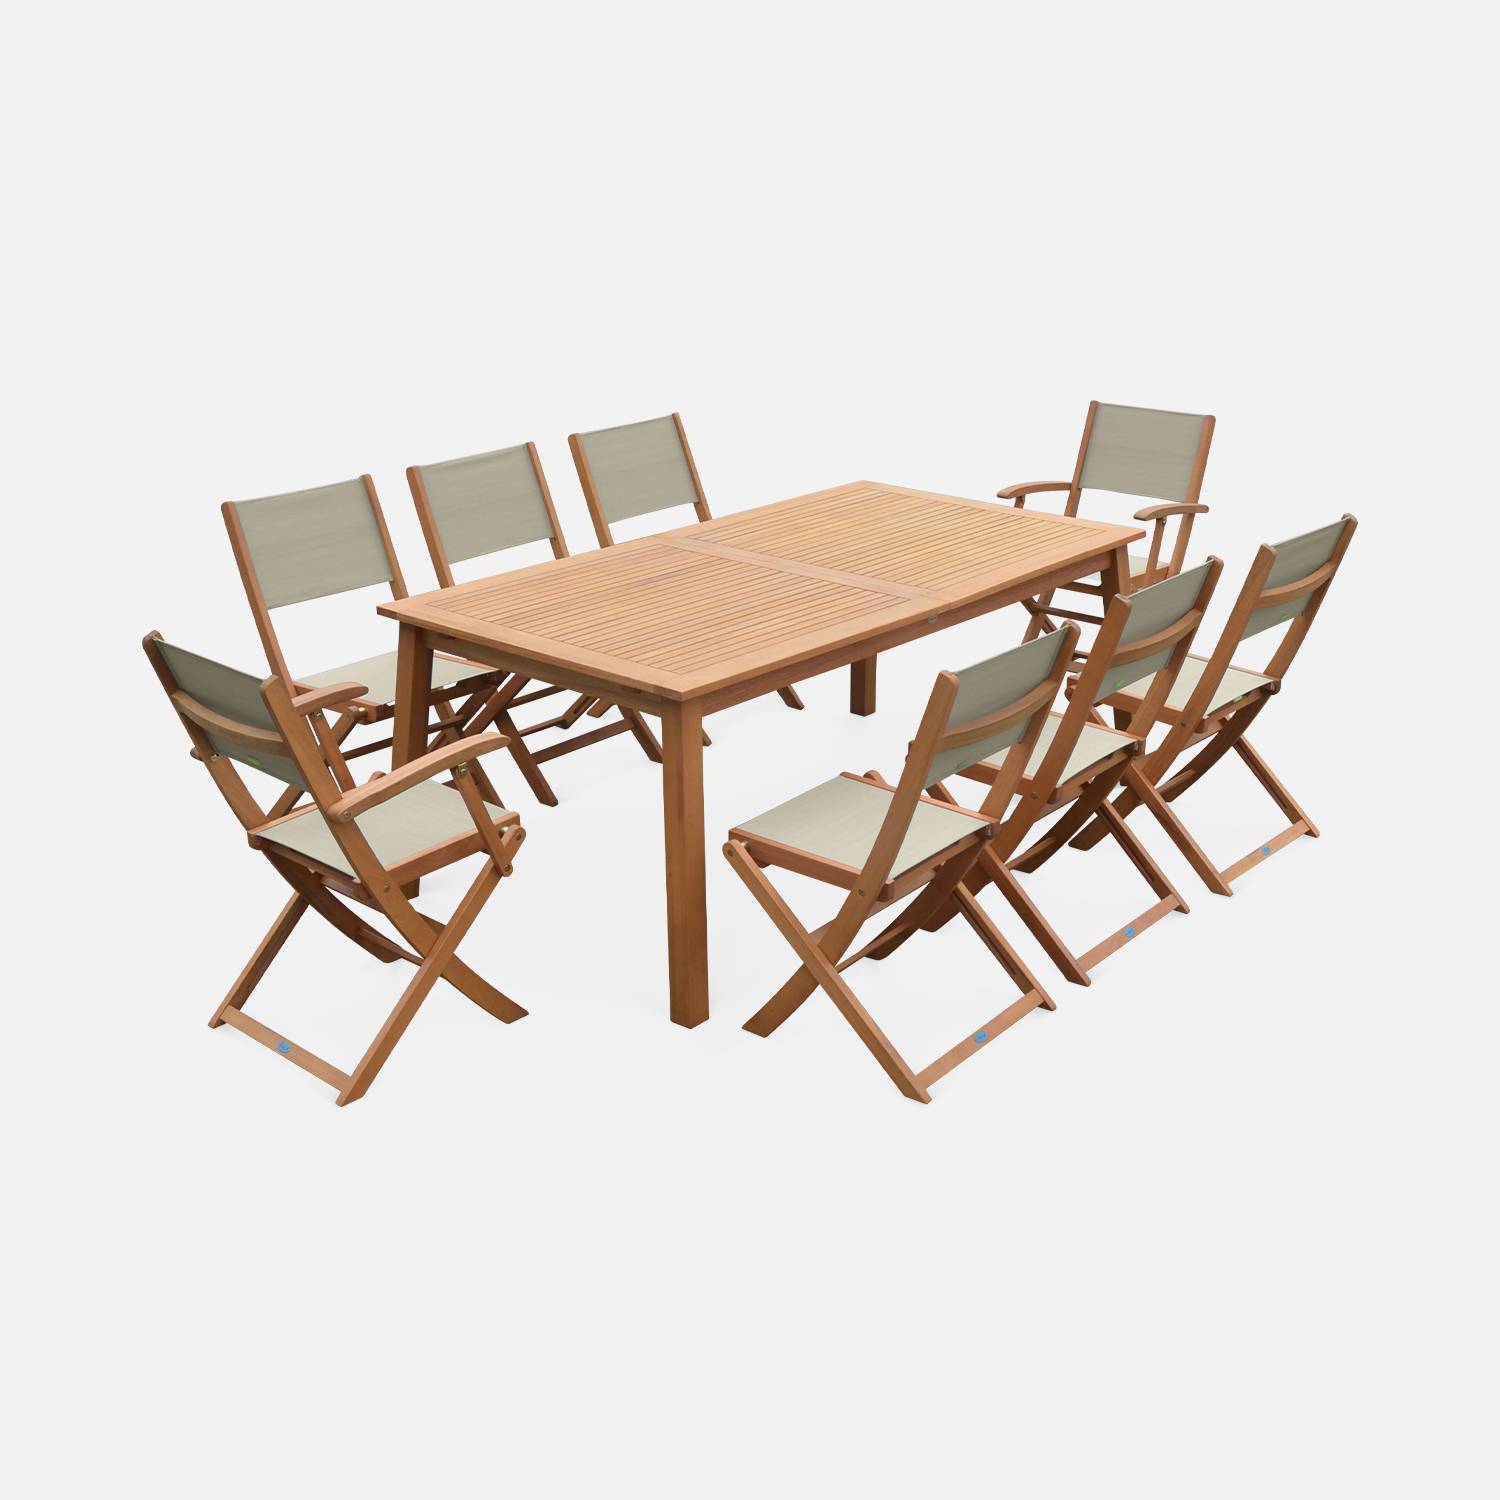 Ausziehbare Gartengarnitur aus Holz - Almeria - Großer Tisch 180/240 cm mit Verlängerung, 2 Sesseln und 6 Stühlen aus geöltem FSC-Eukalyptusholz und taupegrauem Textilene Photo4